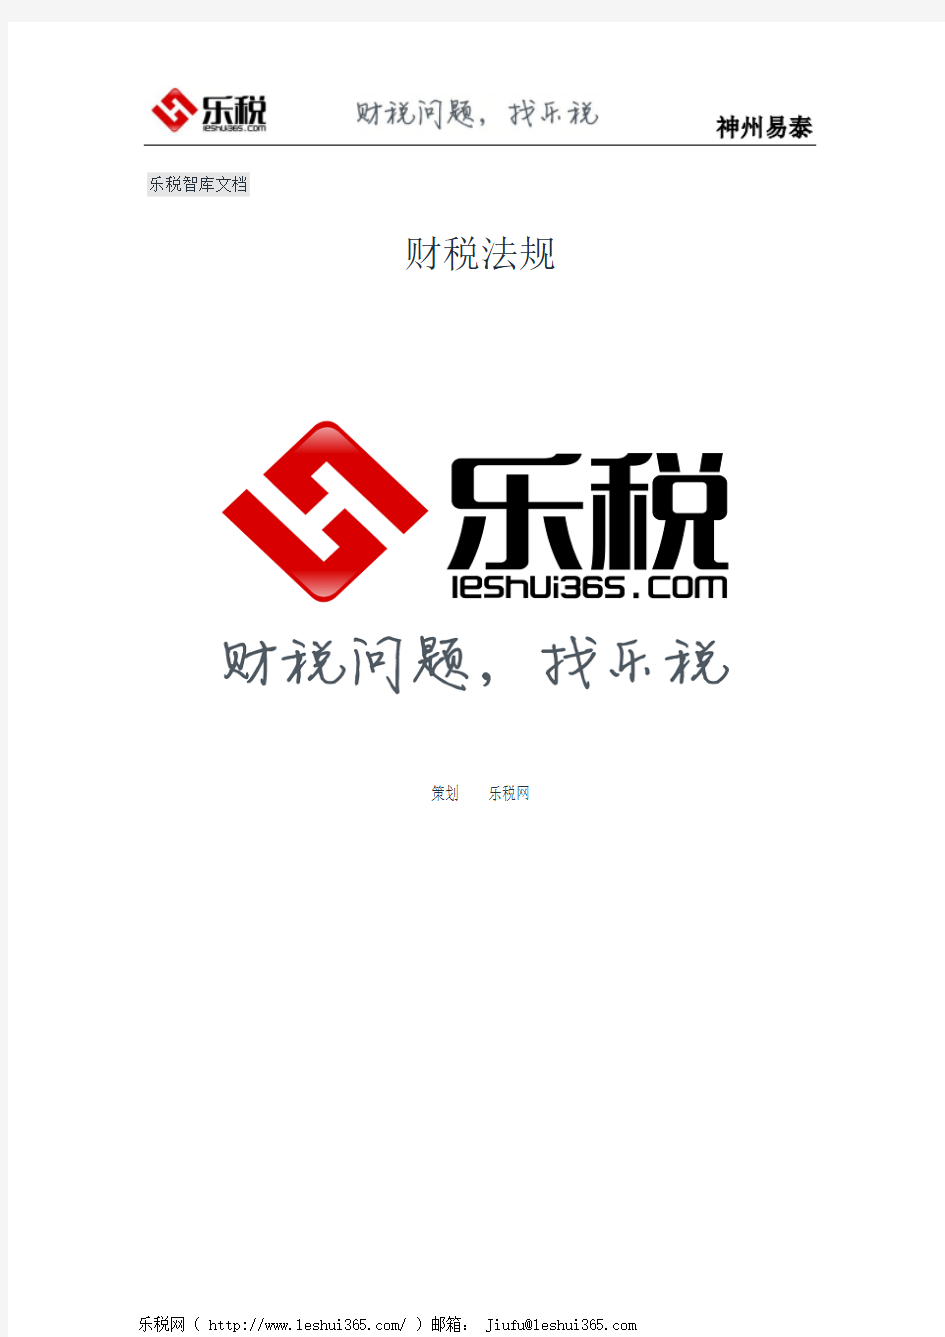 湖南省地方税务局关于加强印花税征管工作意见的通知